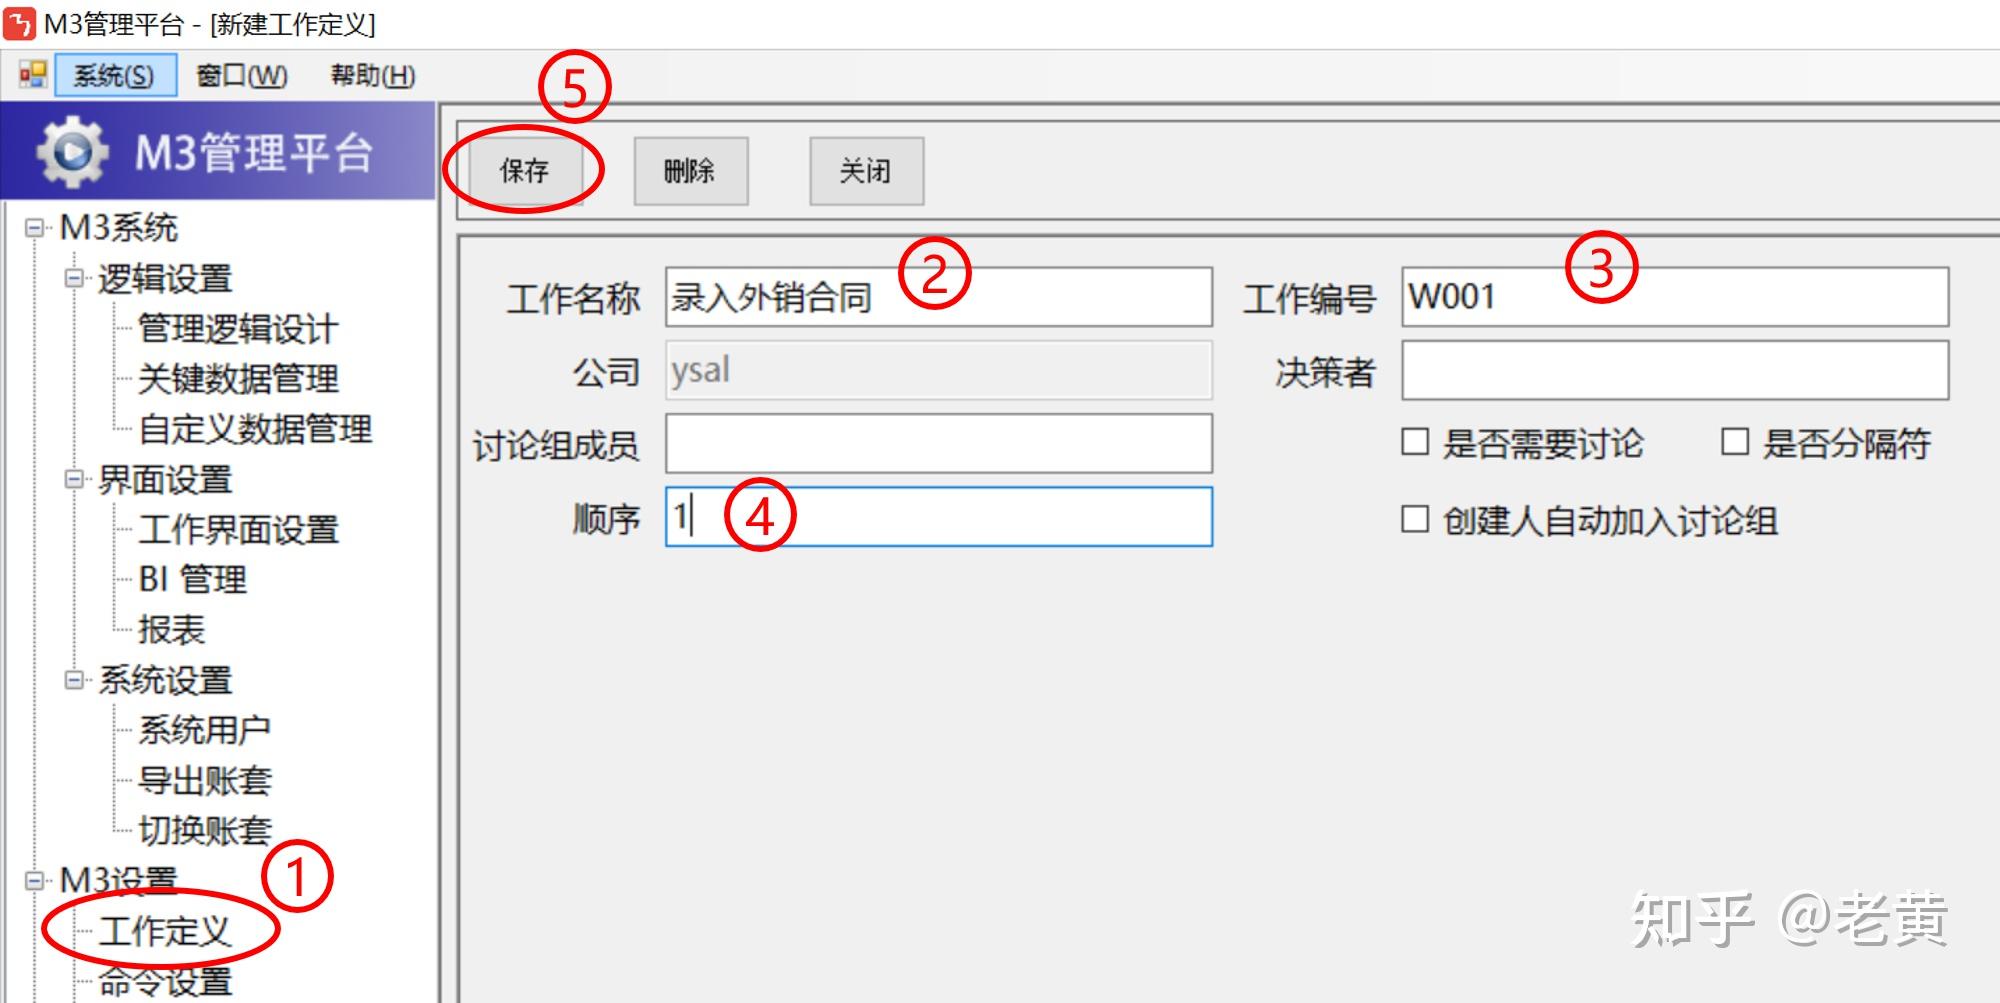 linux中文字符集安装包_linux 中文字符集